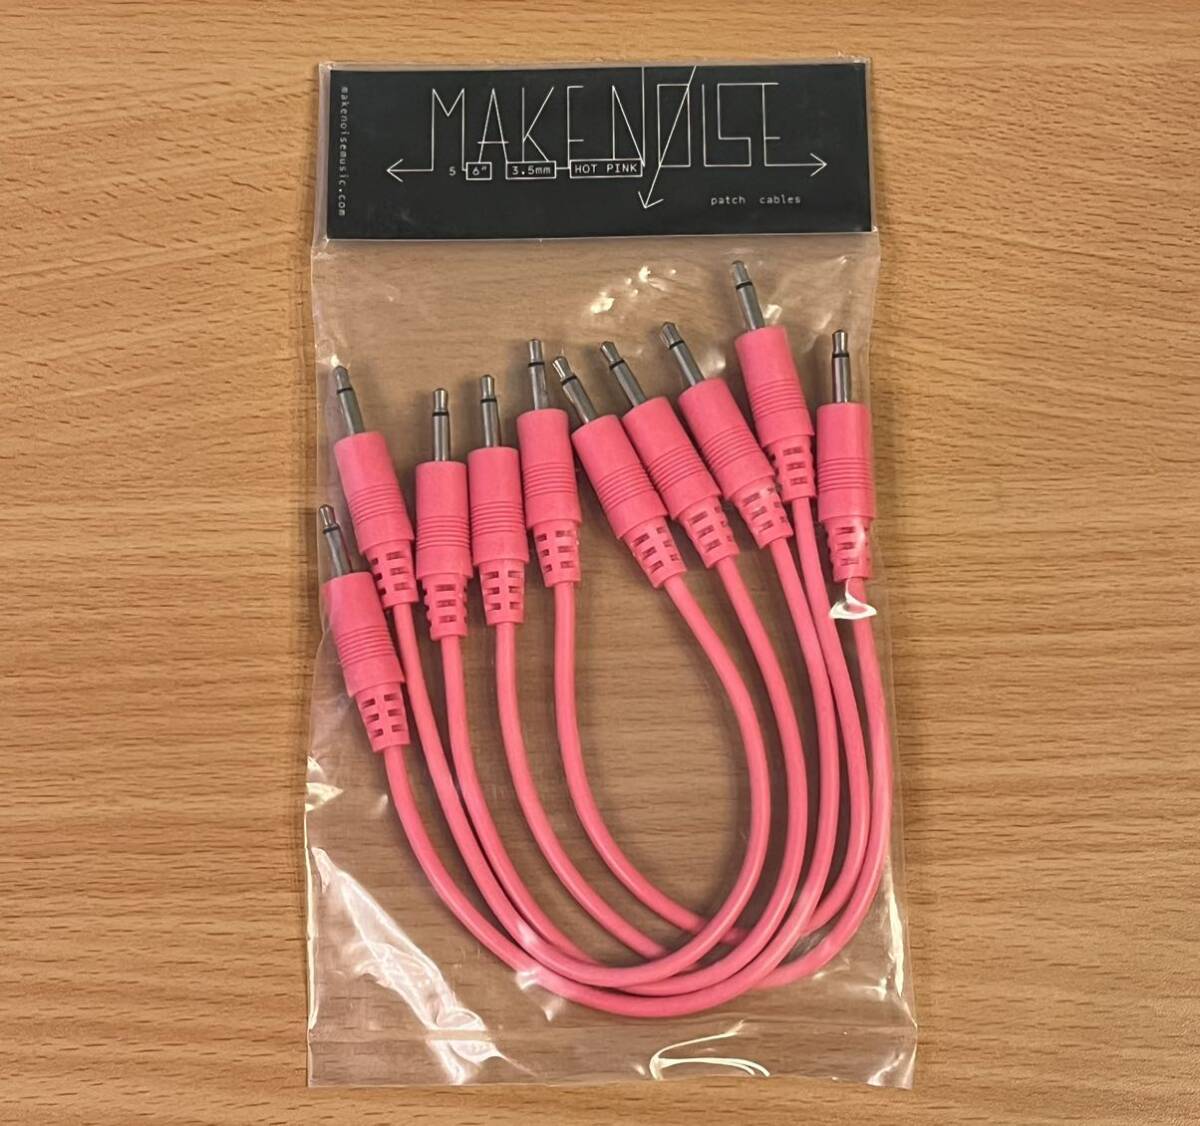 Make Noise patch cable розовый соединительный кабель 15cm 5шт.@ новый товар нераспечатанный modular Synth евро подставка 